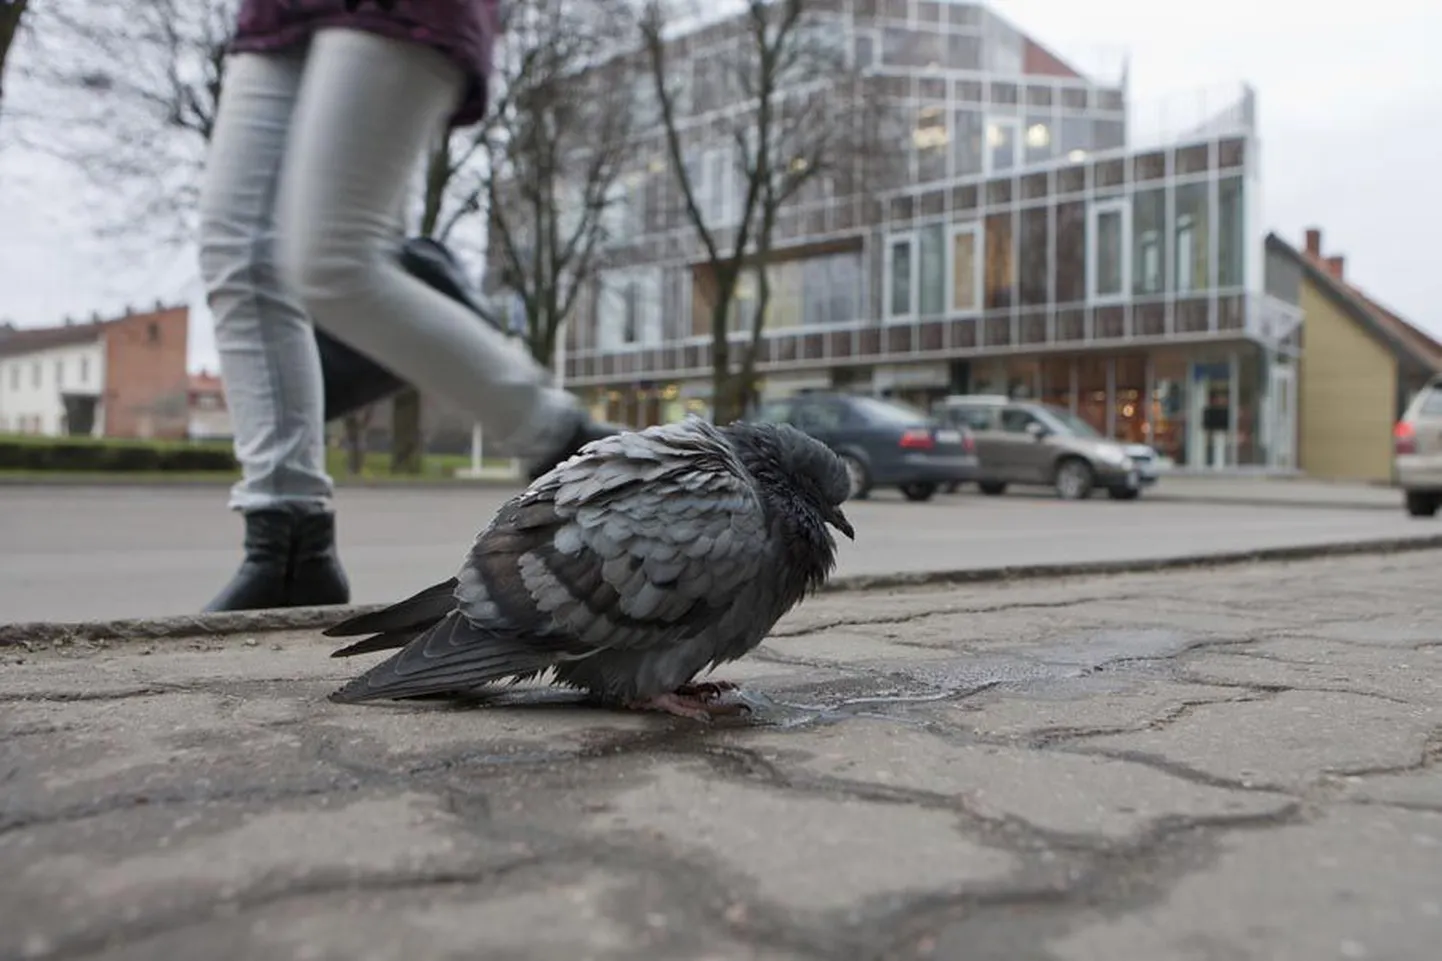 Eile Tartu tänaval kössitanud tuvi oli ilmselt haige ega teinud mööduvatest inimestest väljagi. Samal moel käituvaid linde on viimastel nädalatel märganud paljud linlased.